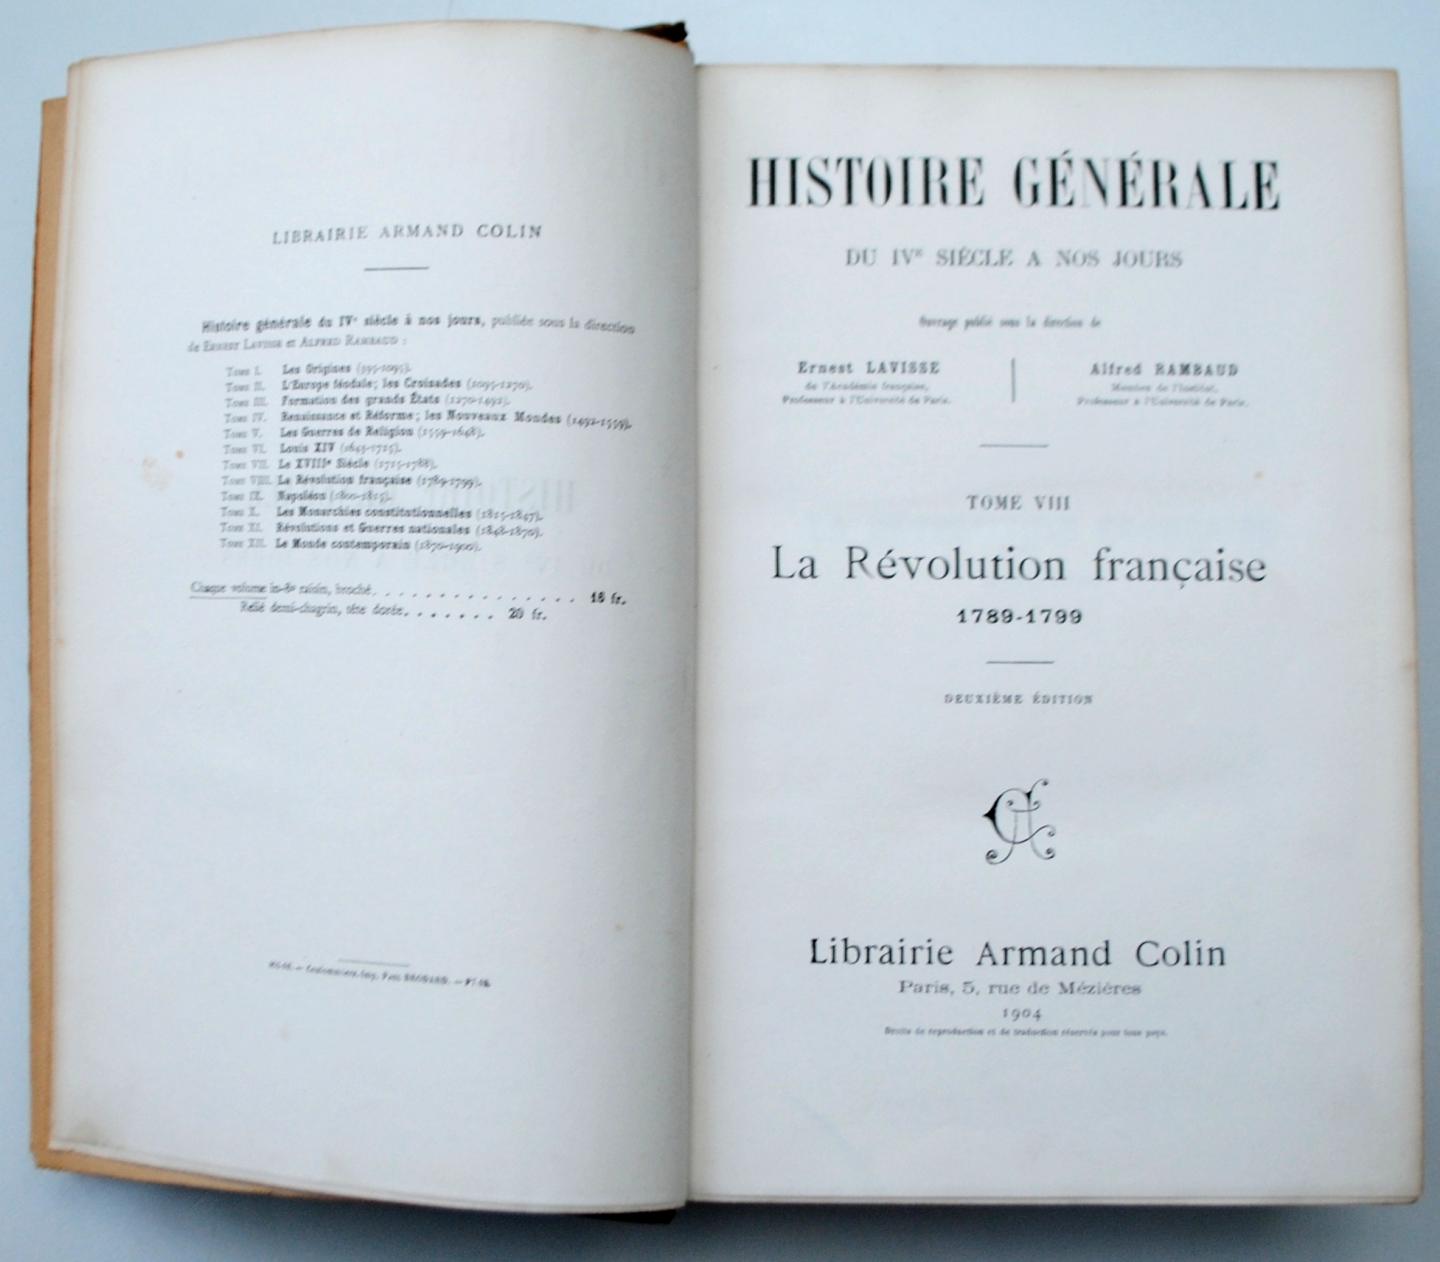 Lavisse et Rambaud - Histoire Generale  Du IVe Siecle A Nos Jours, VIII La Revolution Francaise 1789-1799